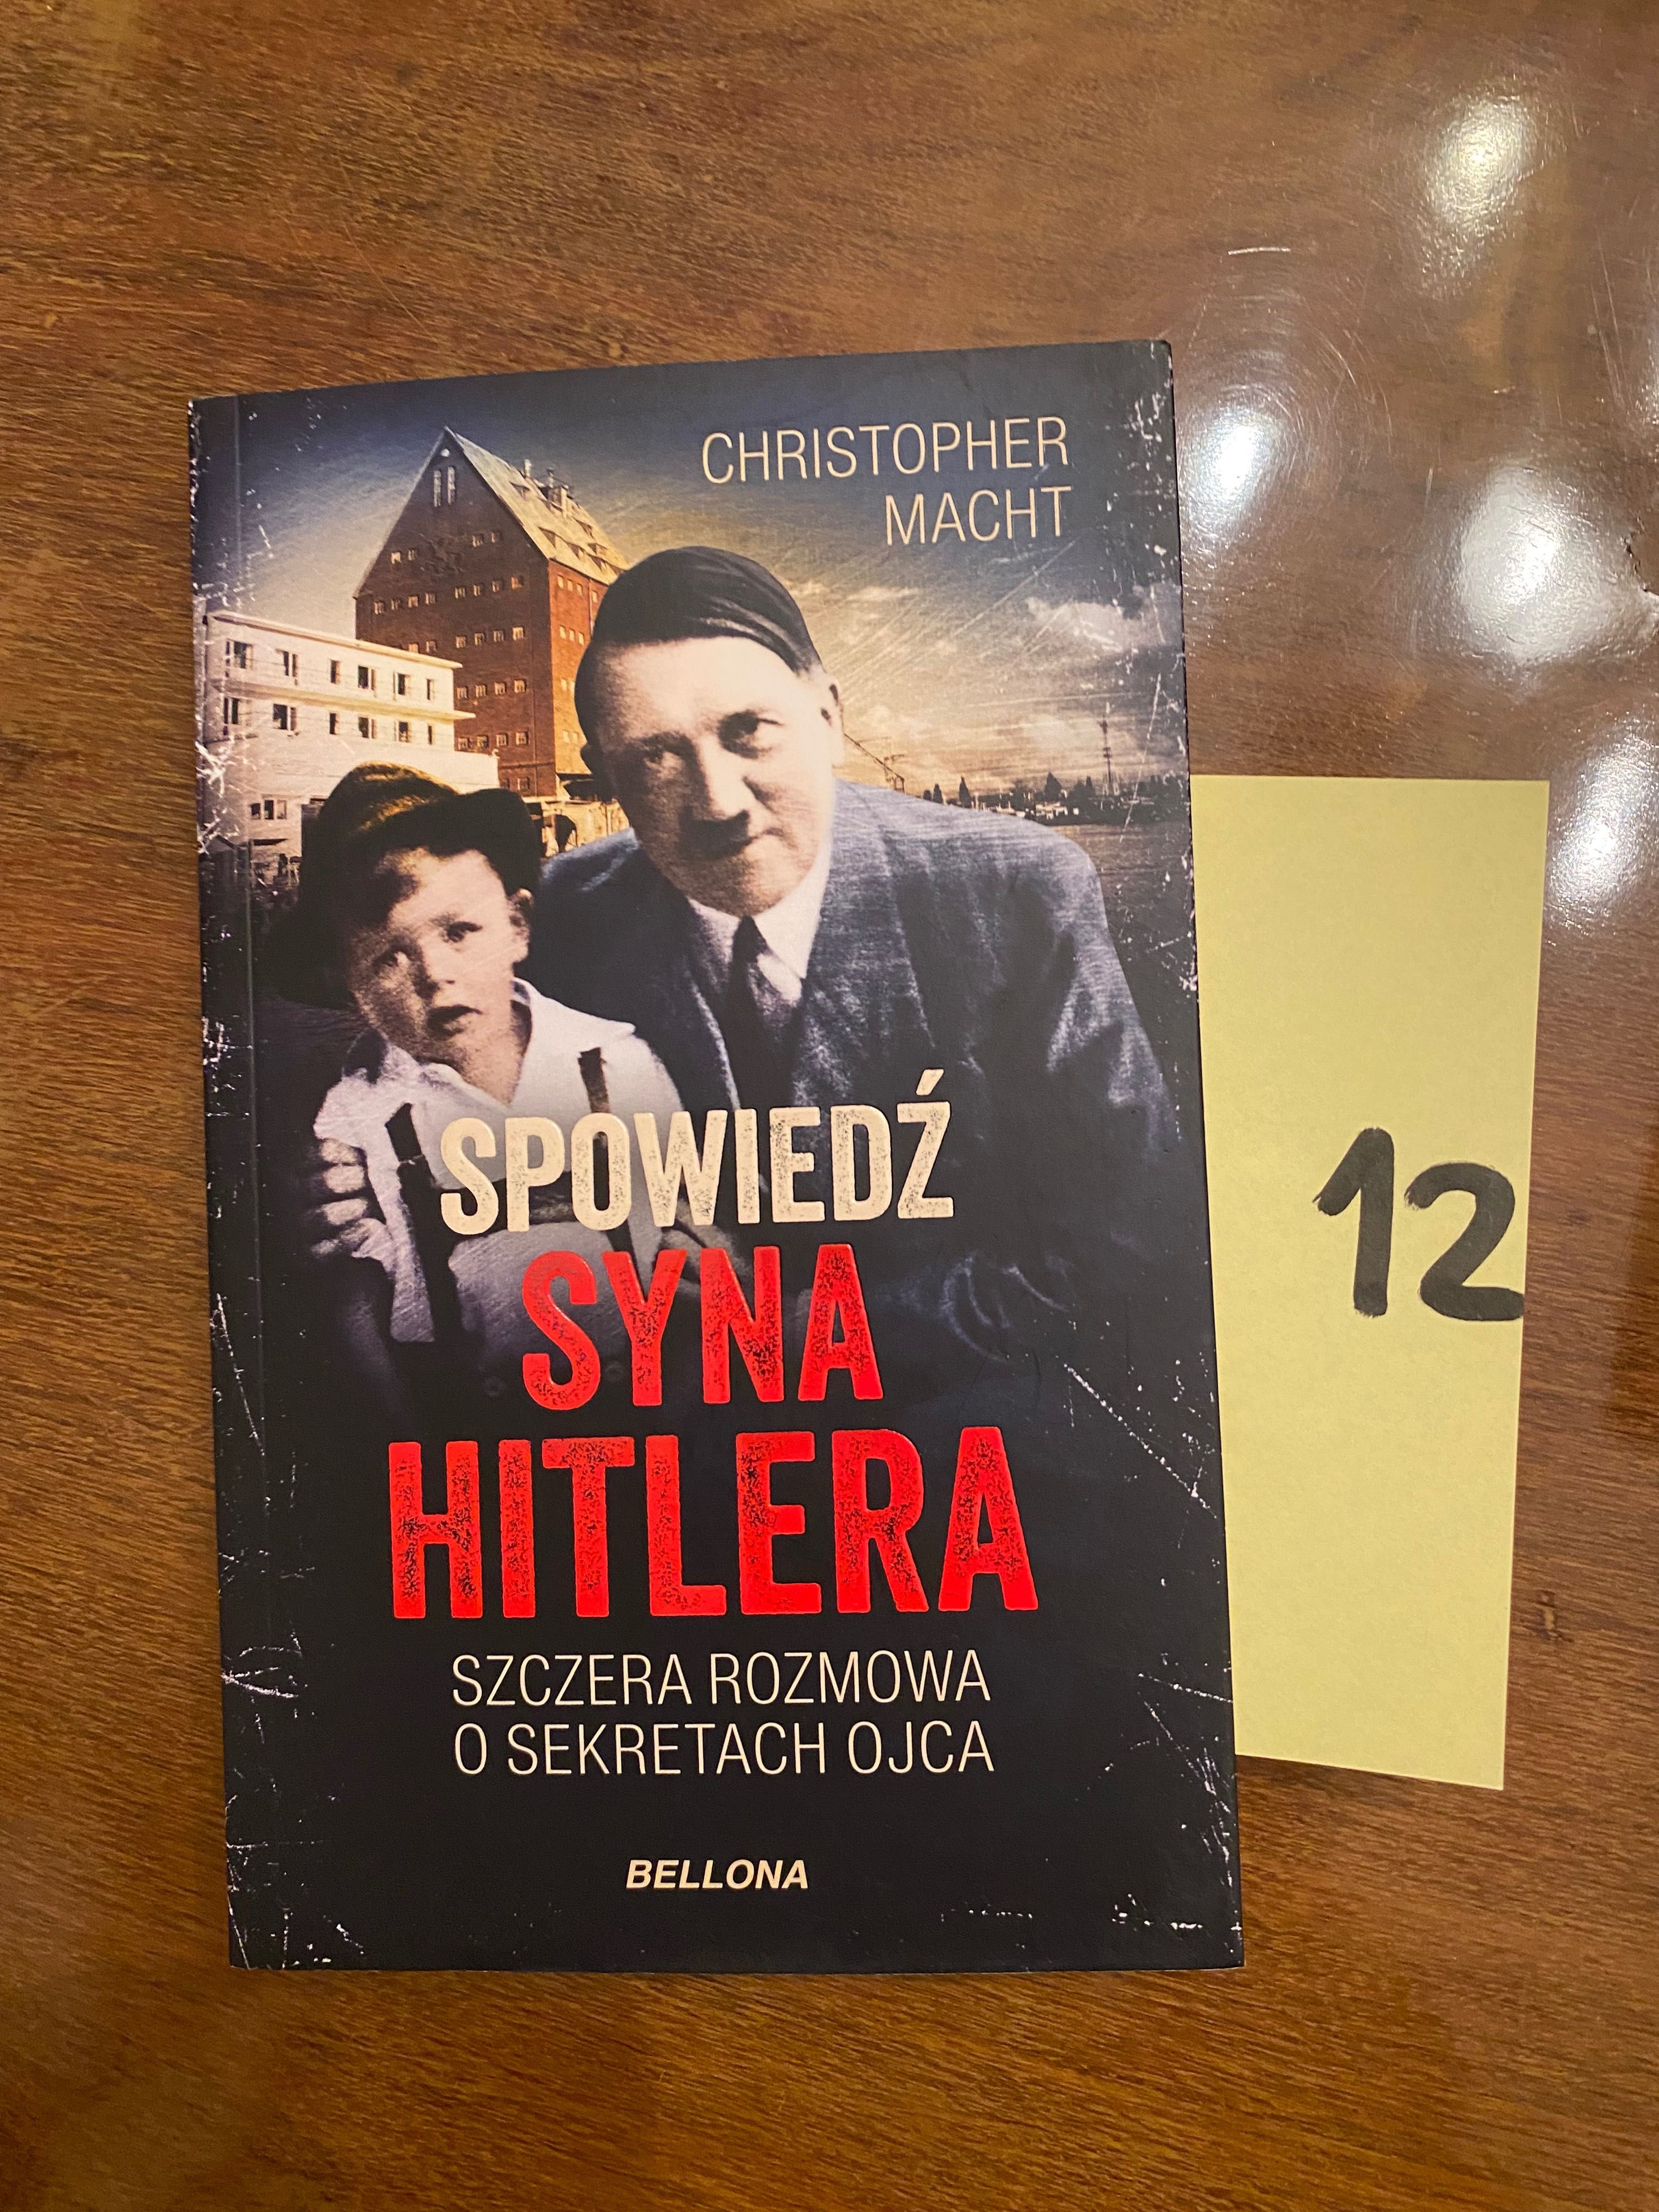 Książka / Spowiedź syna Hitlera - Christopher Macht [12]